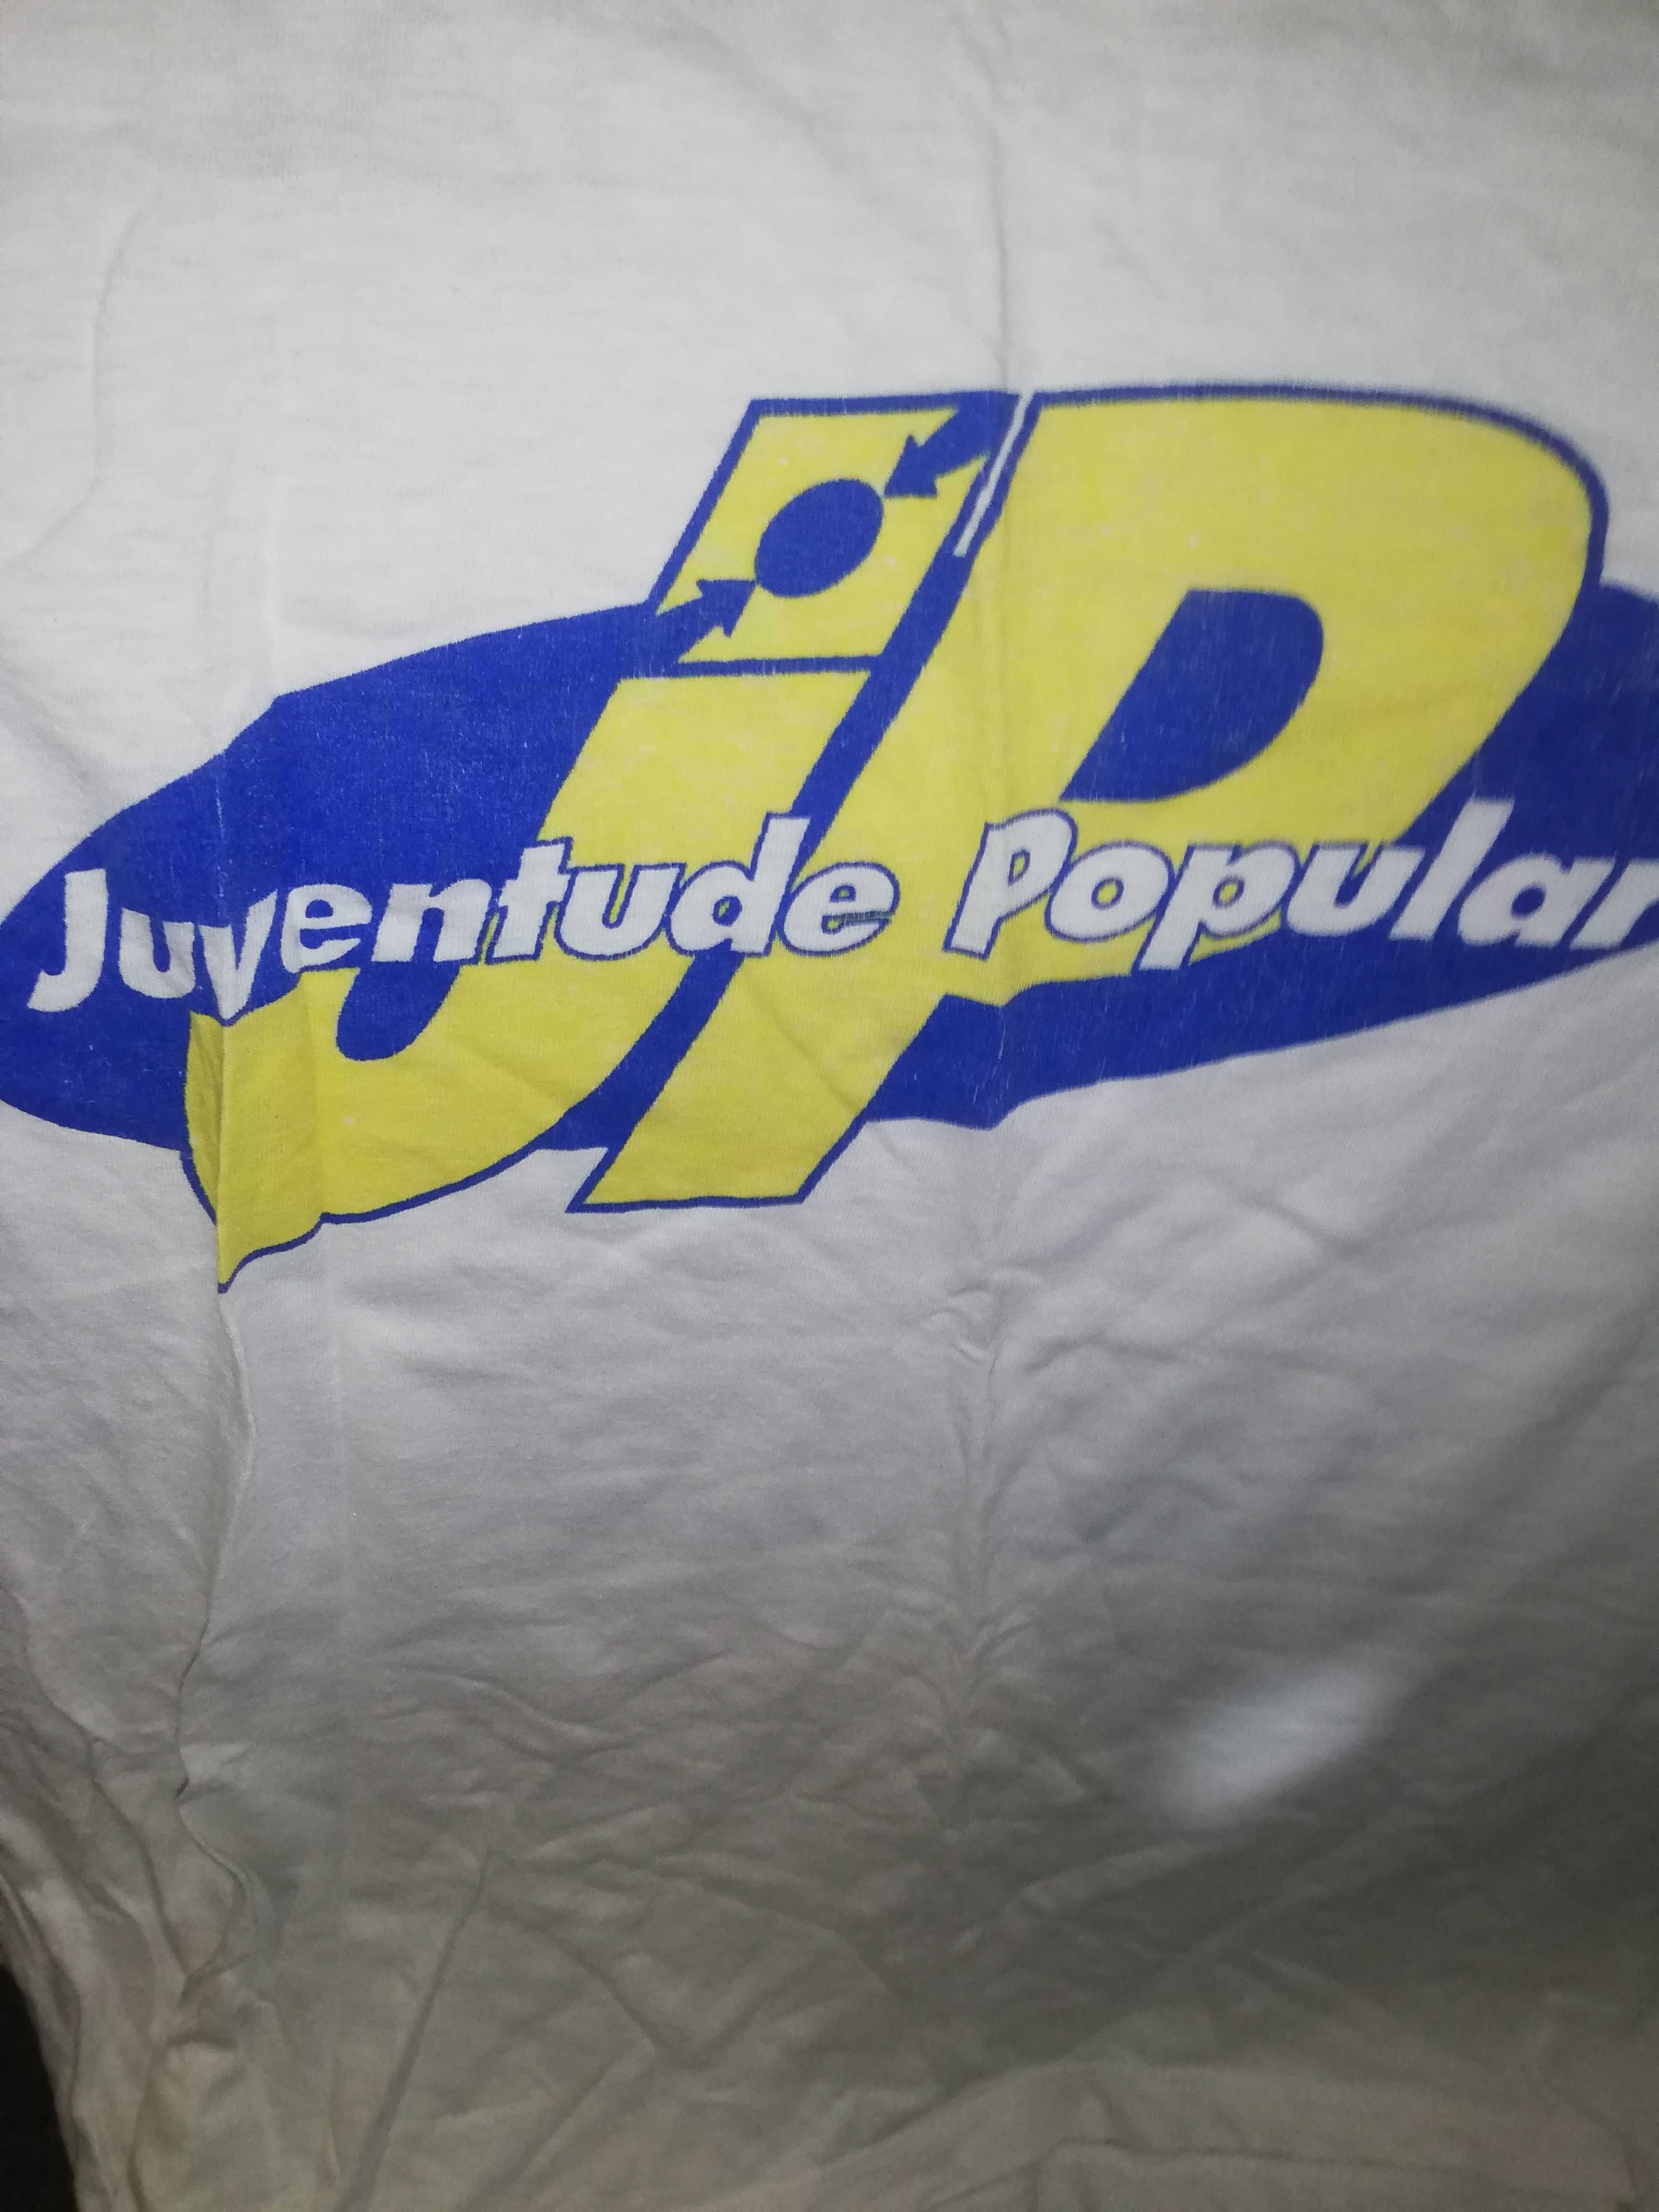 T-shirt Juventude Popular anos 90, rara